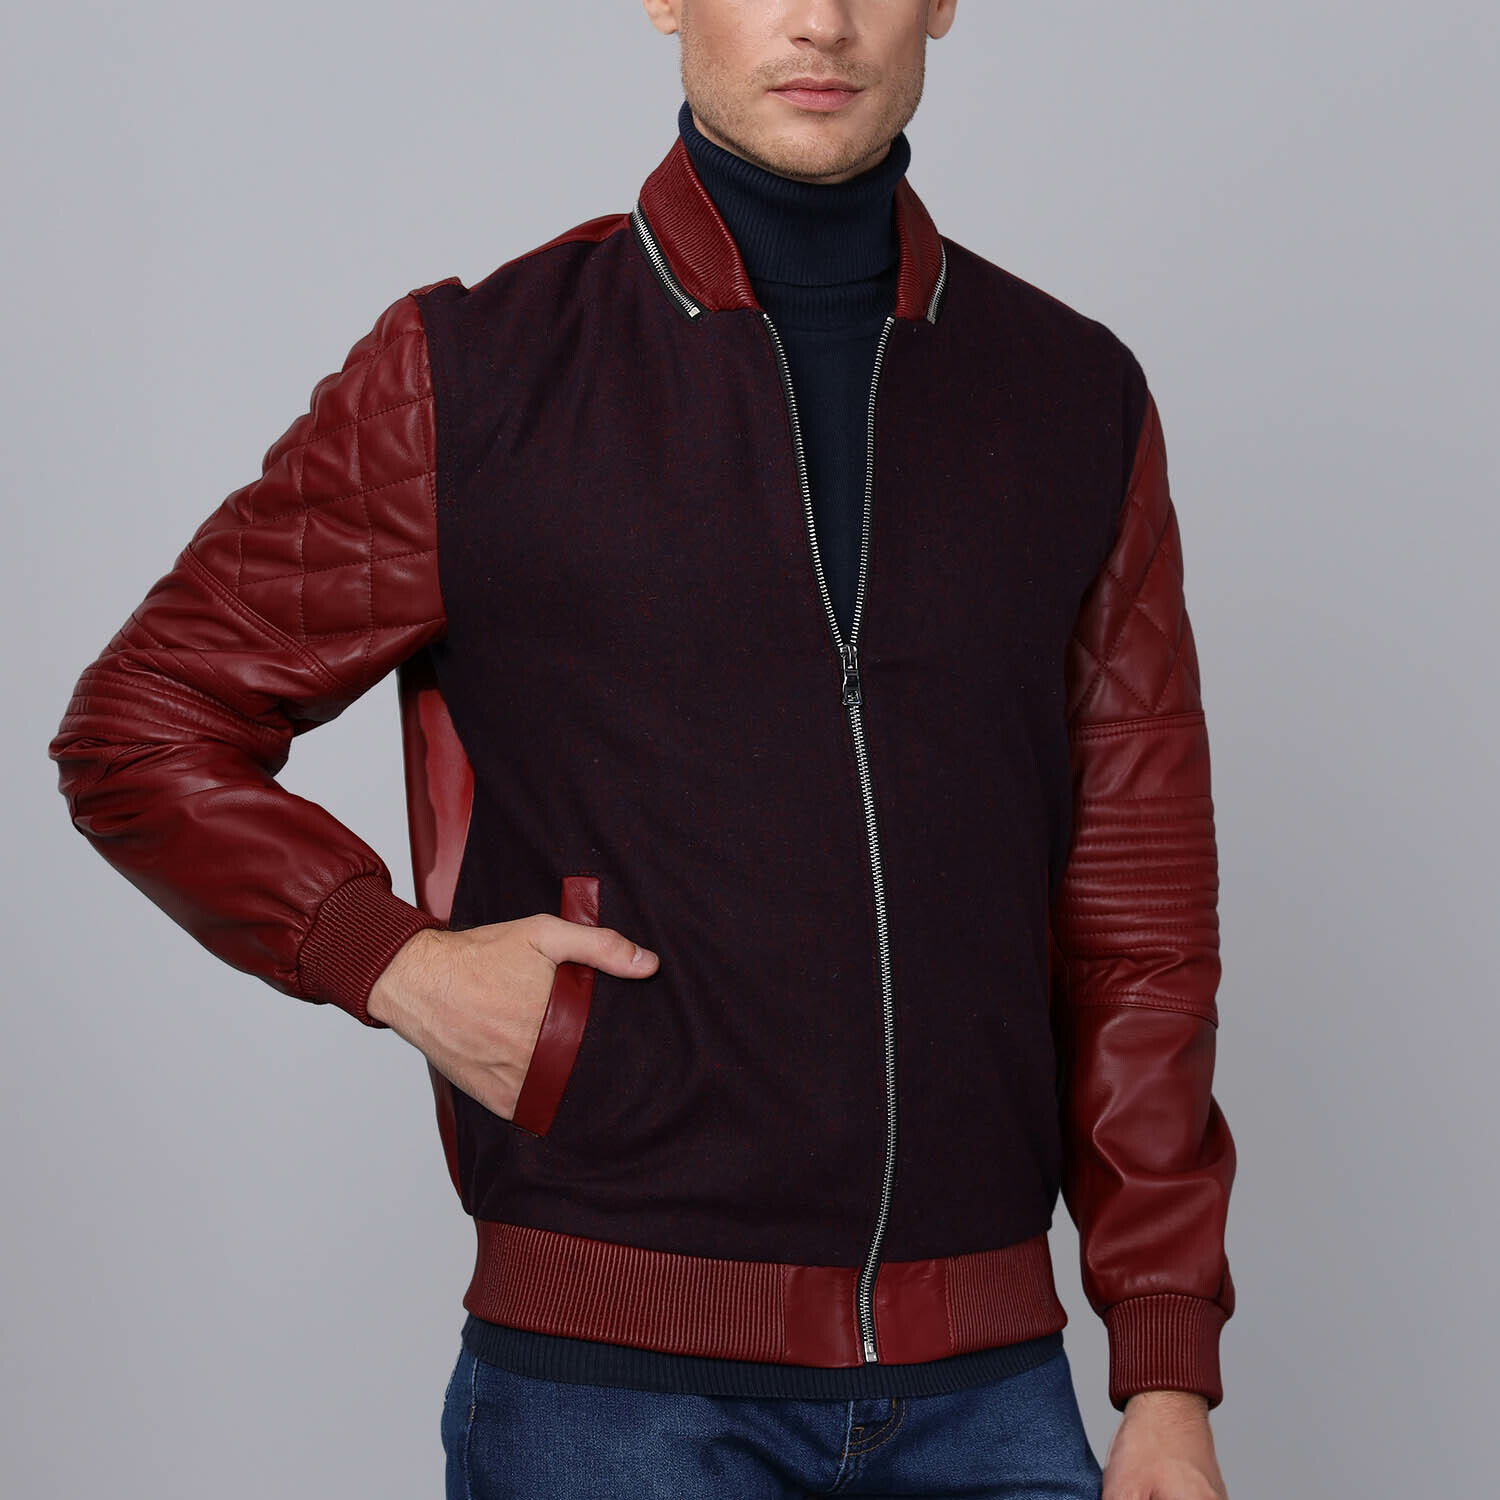 Mendoza Leather Jacket // Bordeaux (2XL) - Basics&More Leather Jackets ...